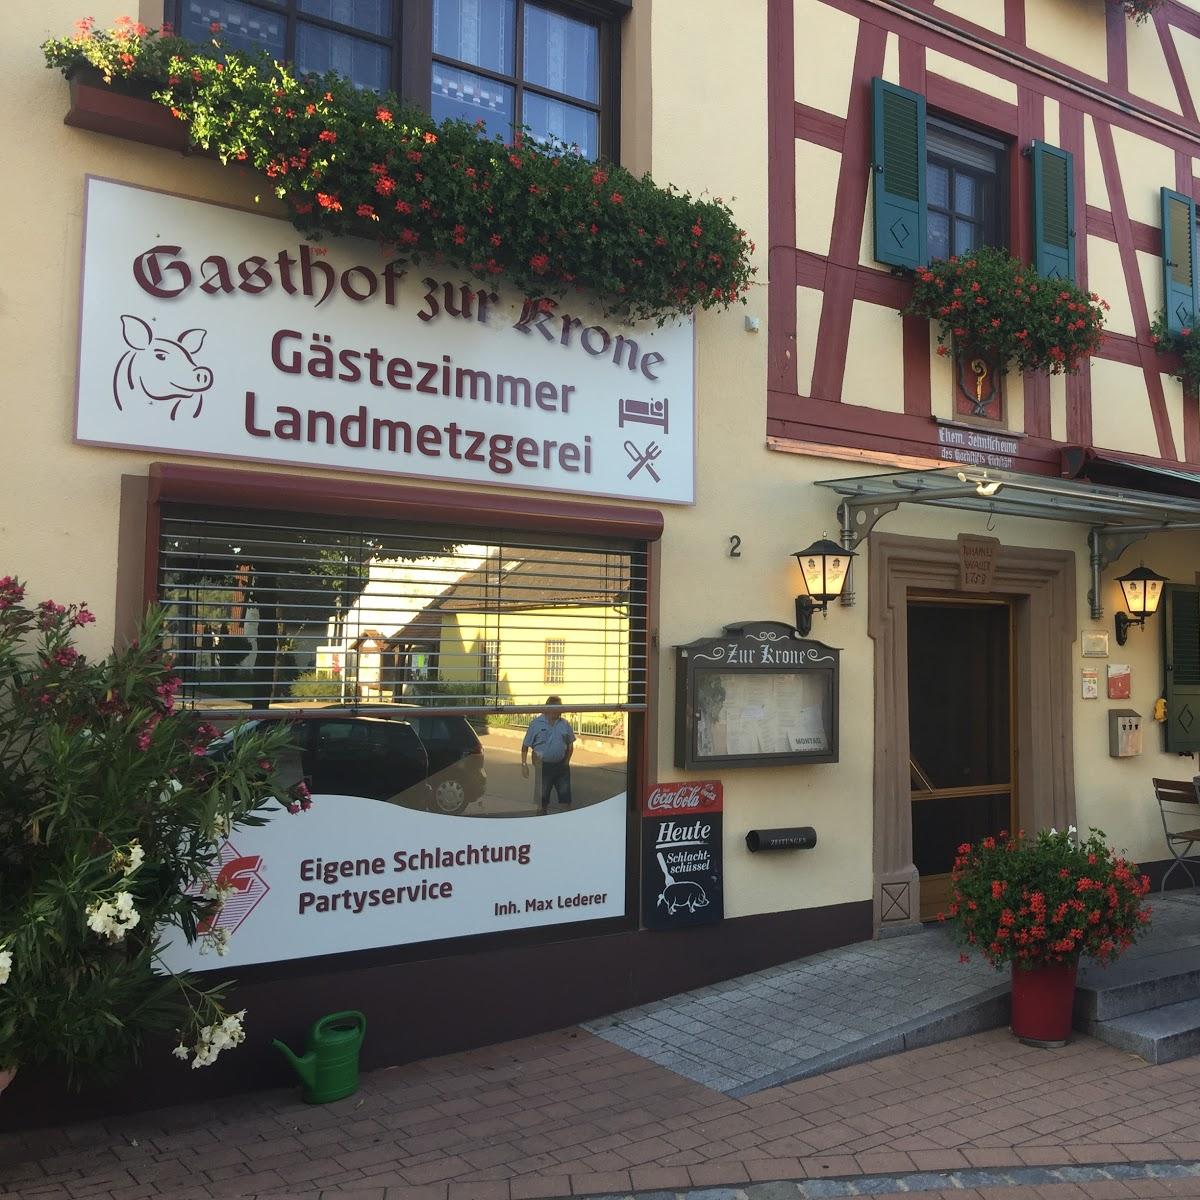 Restaurant "Gaststätte" in Mitteleschenbach